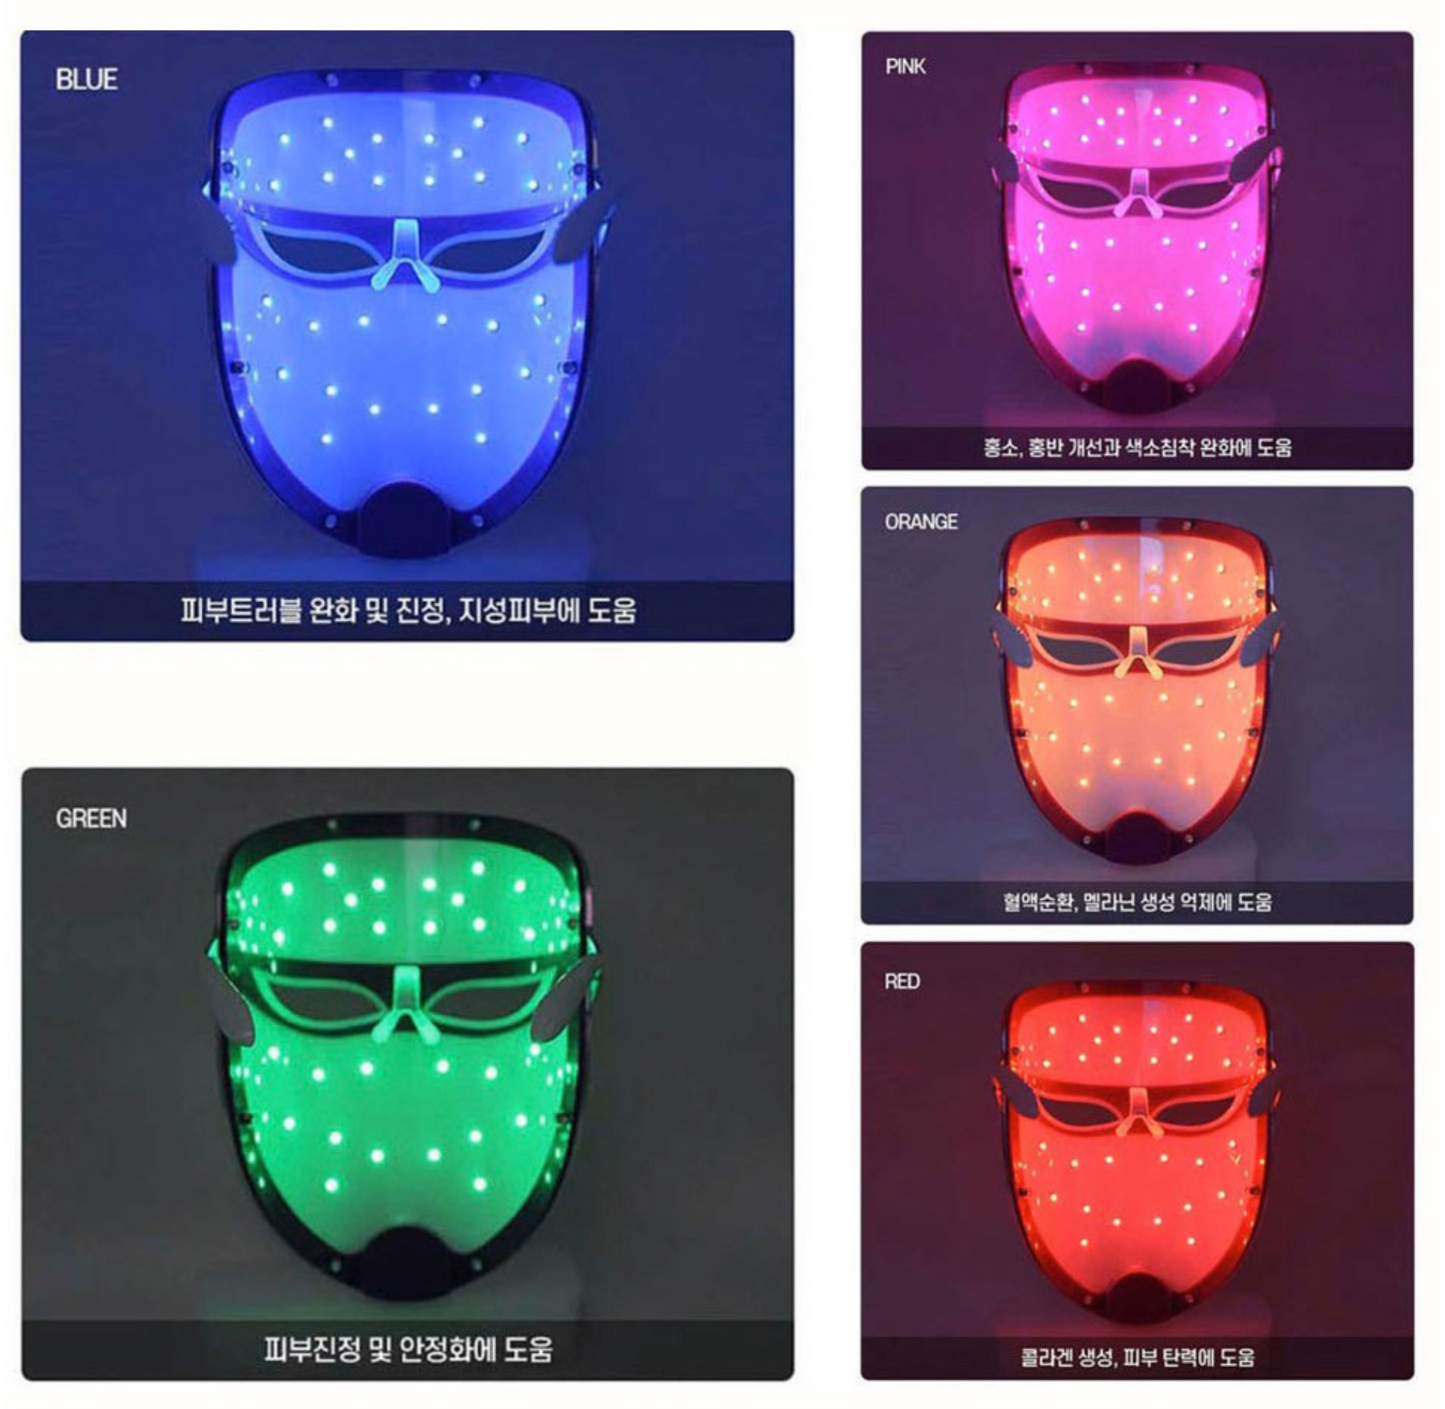 Re Zum LED Mask + bubble serum $85 (free)